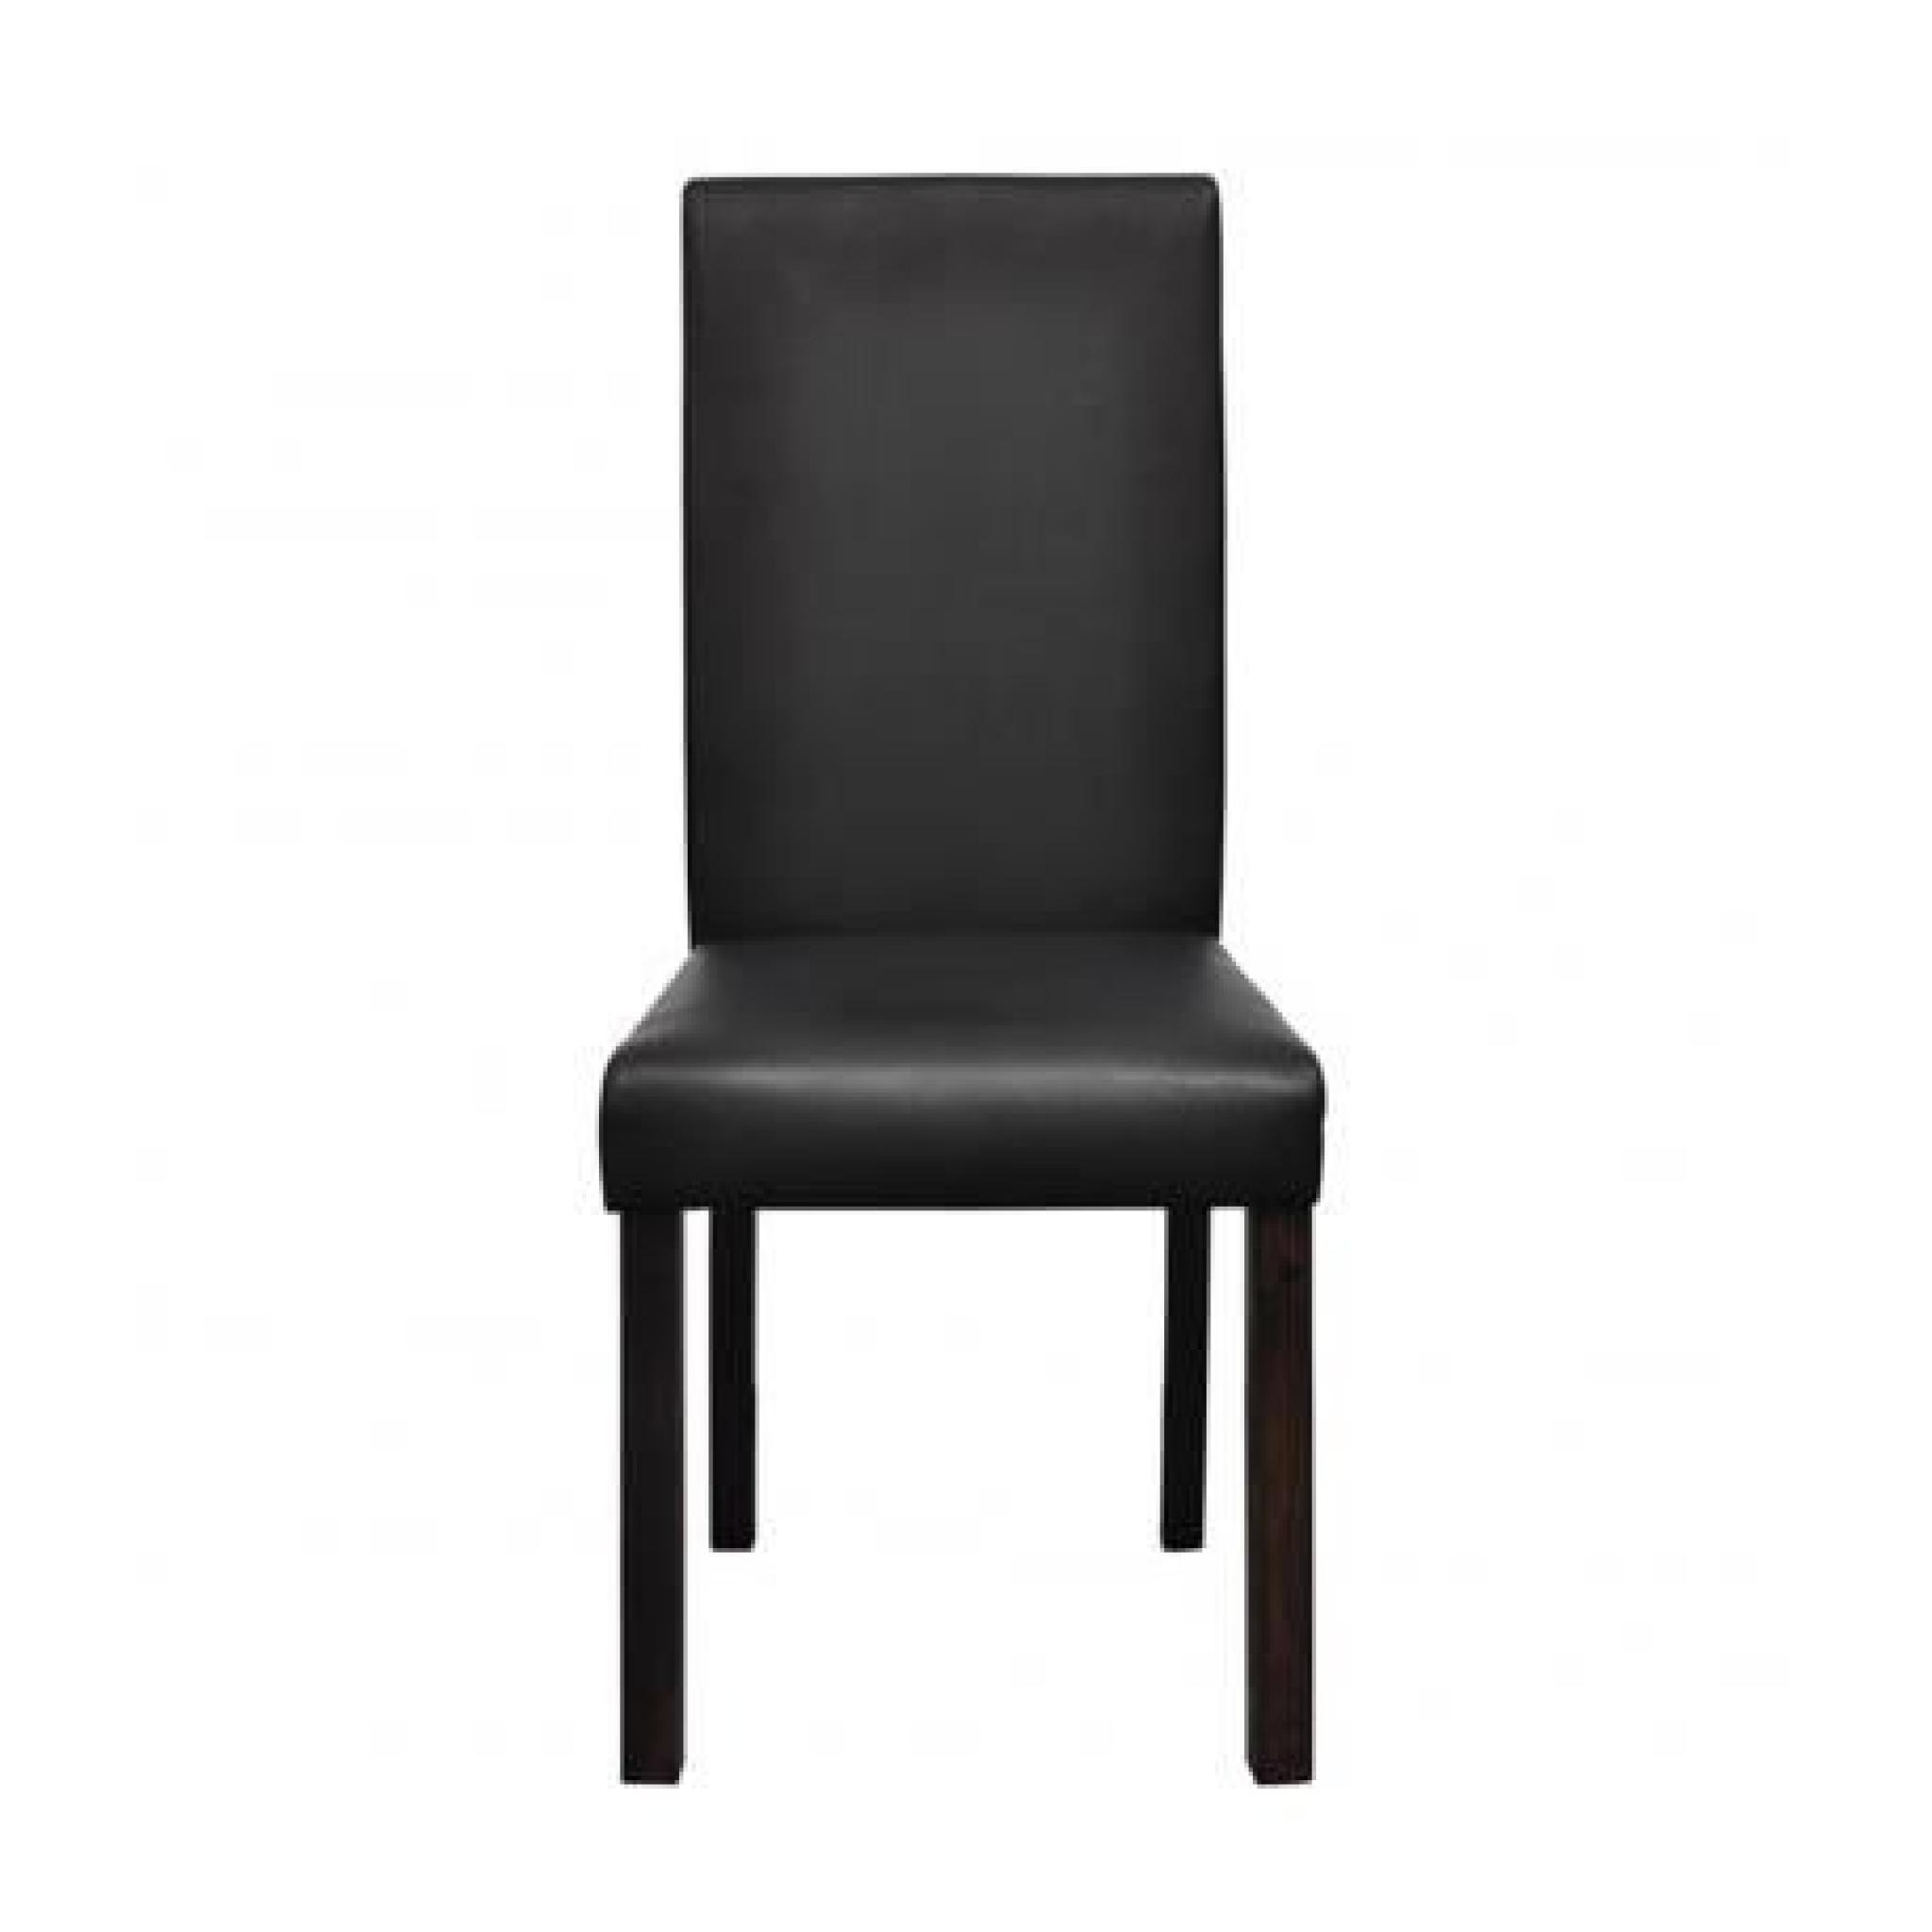 Chaise design classique noire (lot de 2) Stylashop pas cher